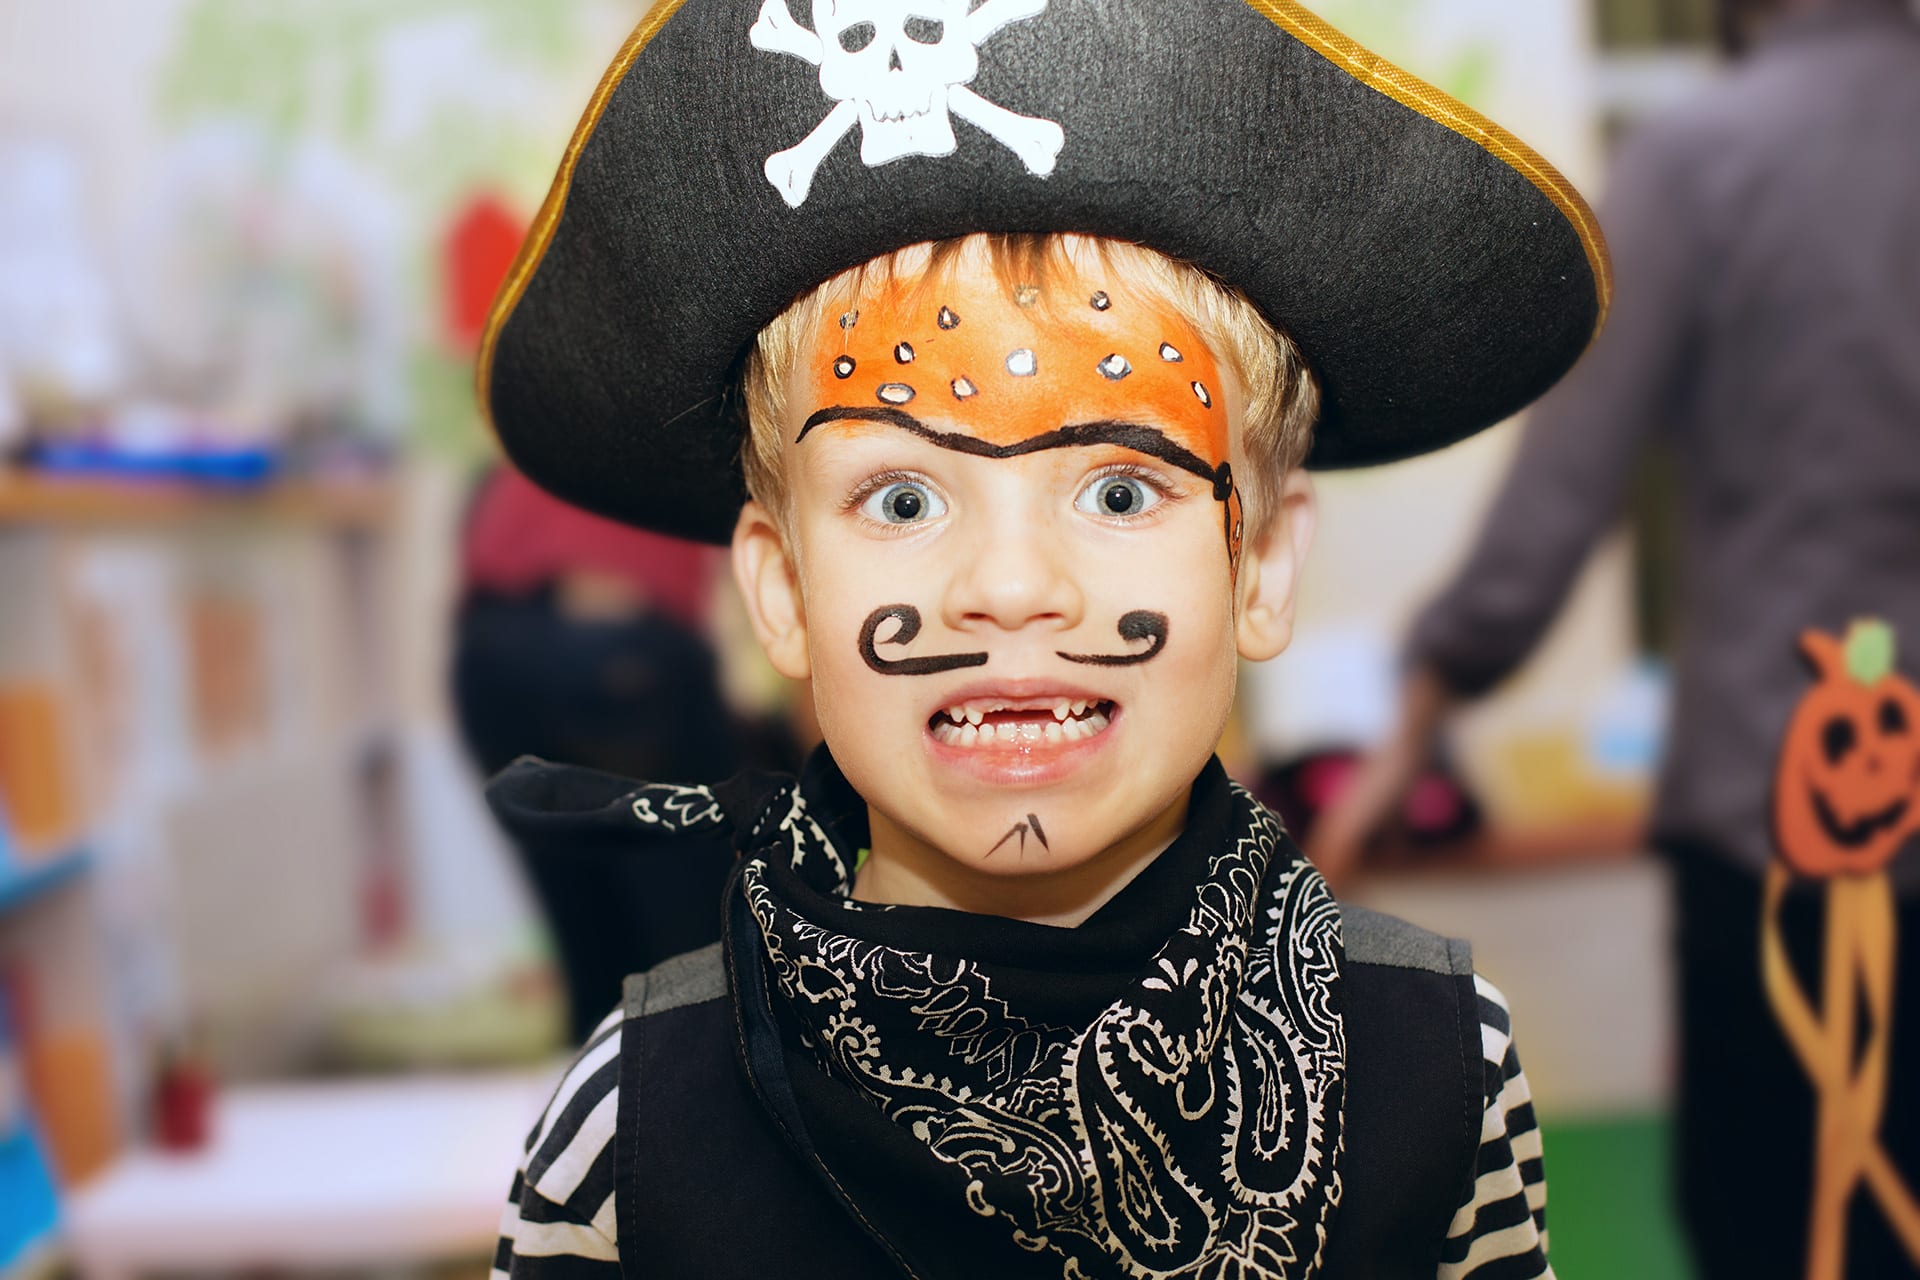 Faschings schminken | Image | Junge mit Piratenhut, Gesicht mit Schnurrbart und Tuch geschminkt